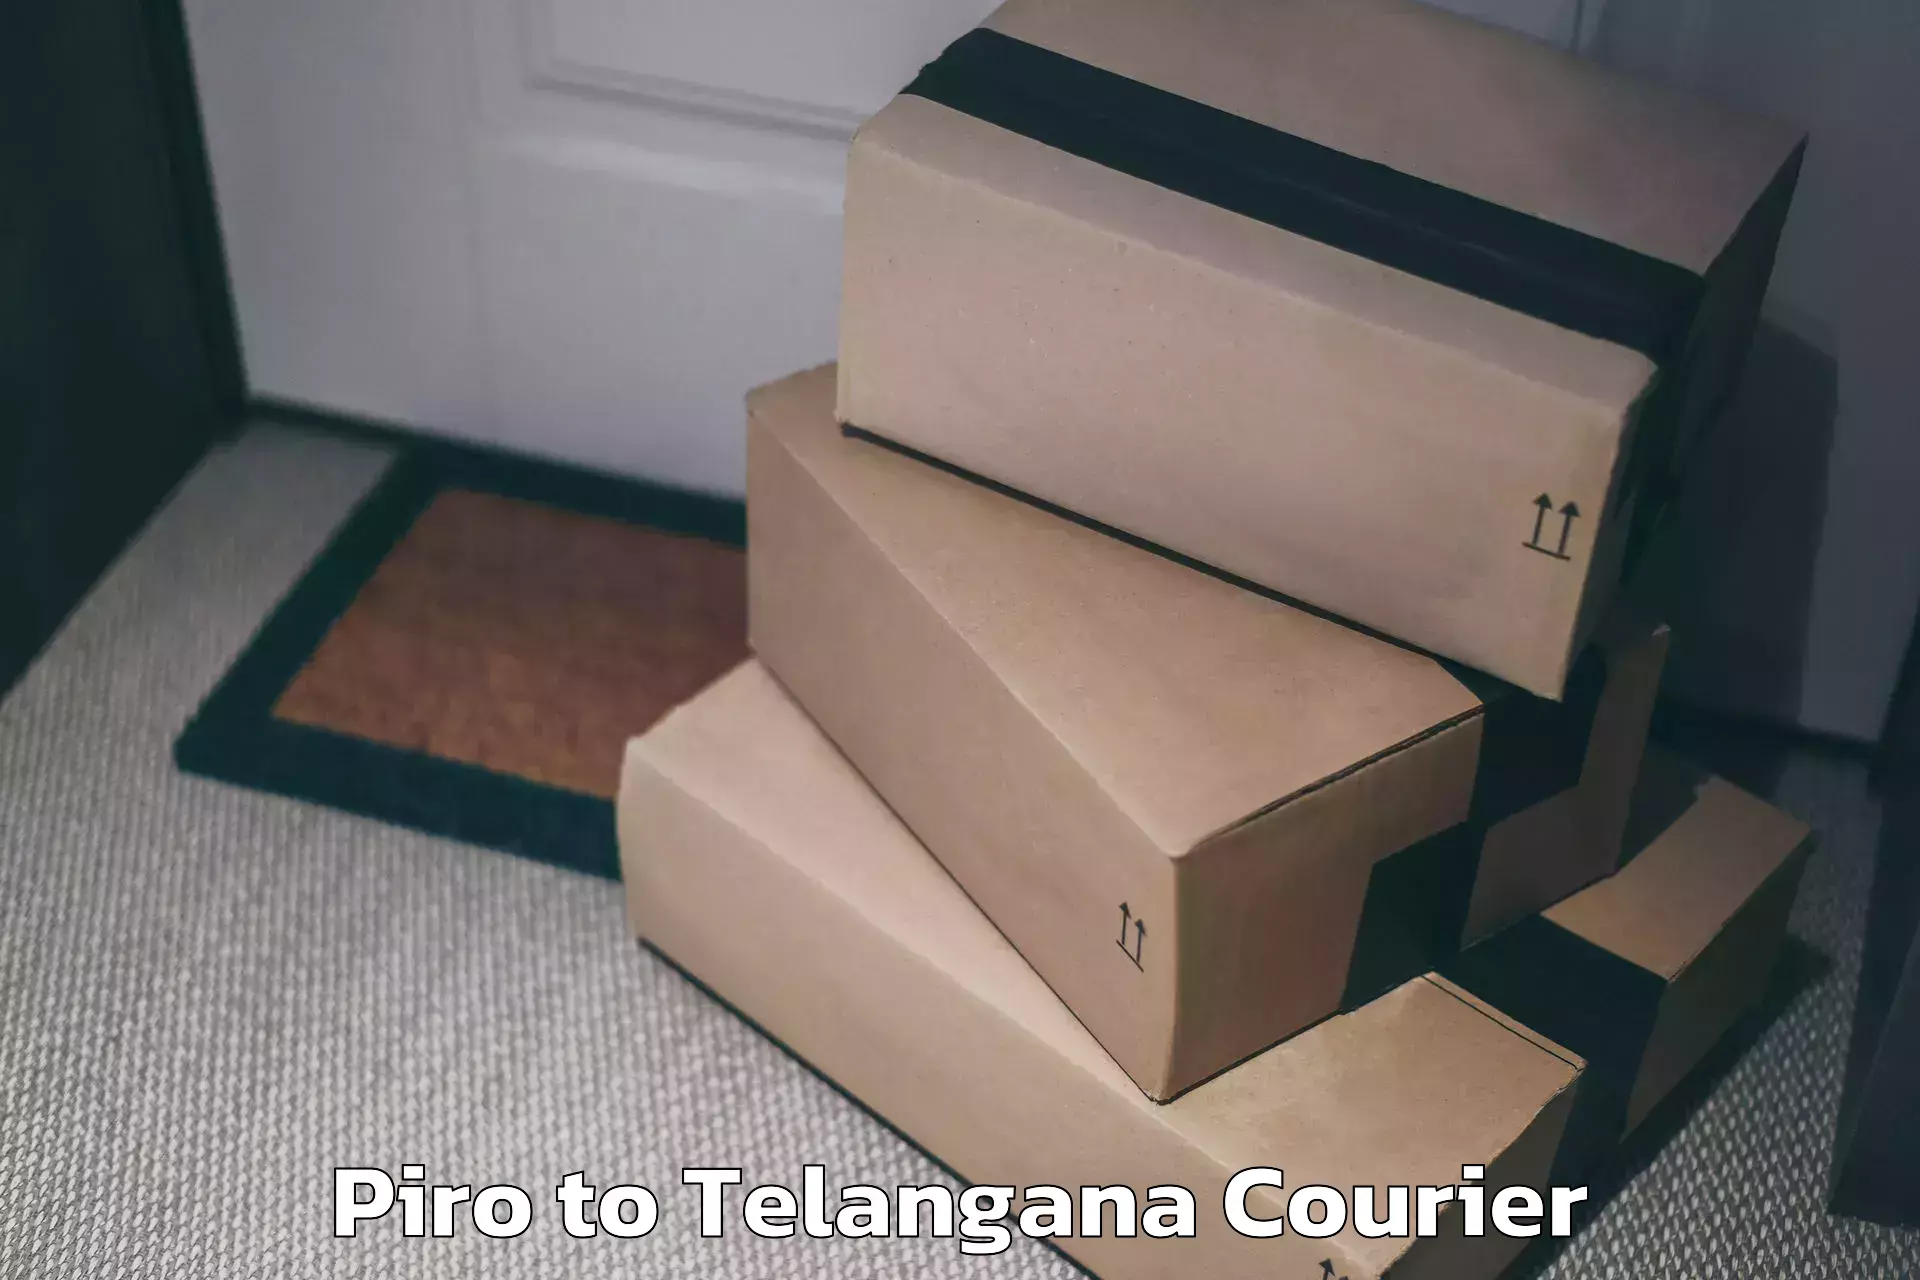 Electronic items luggage shipping Piro to Yerrupalem